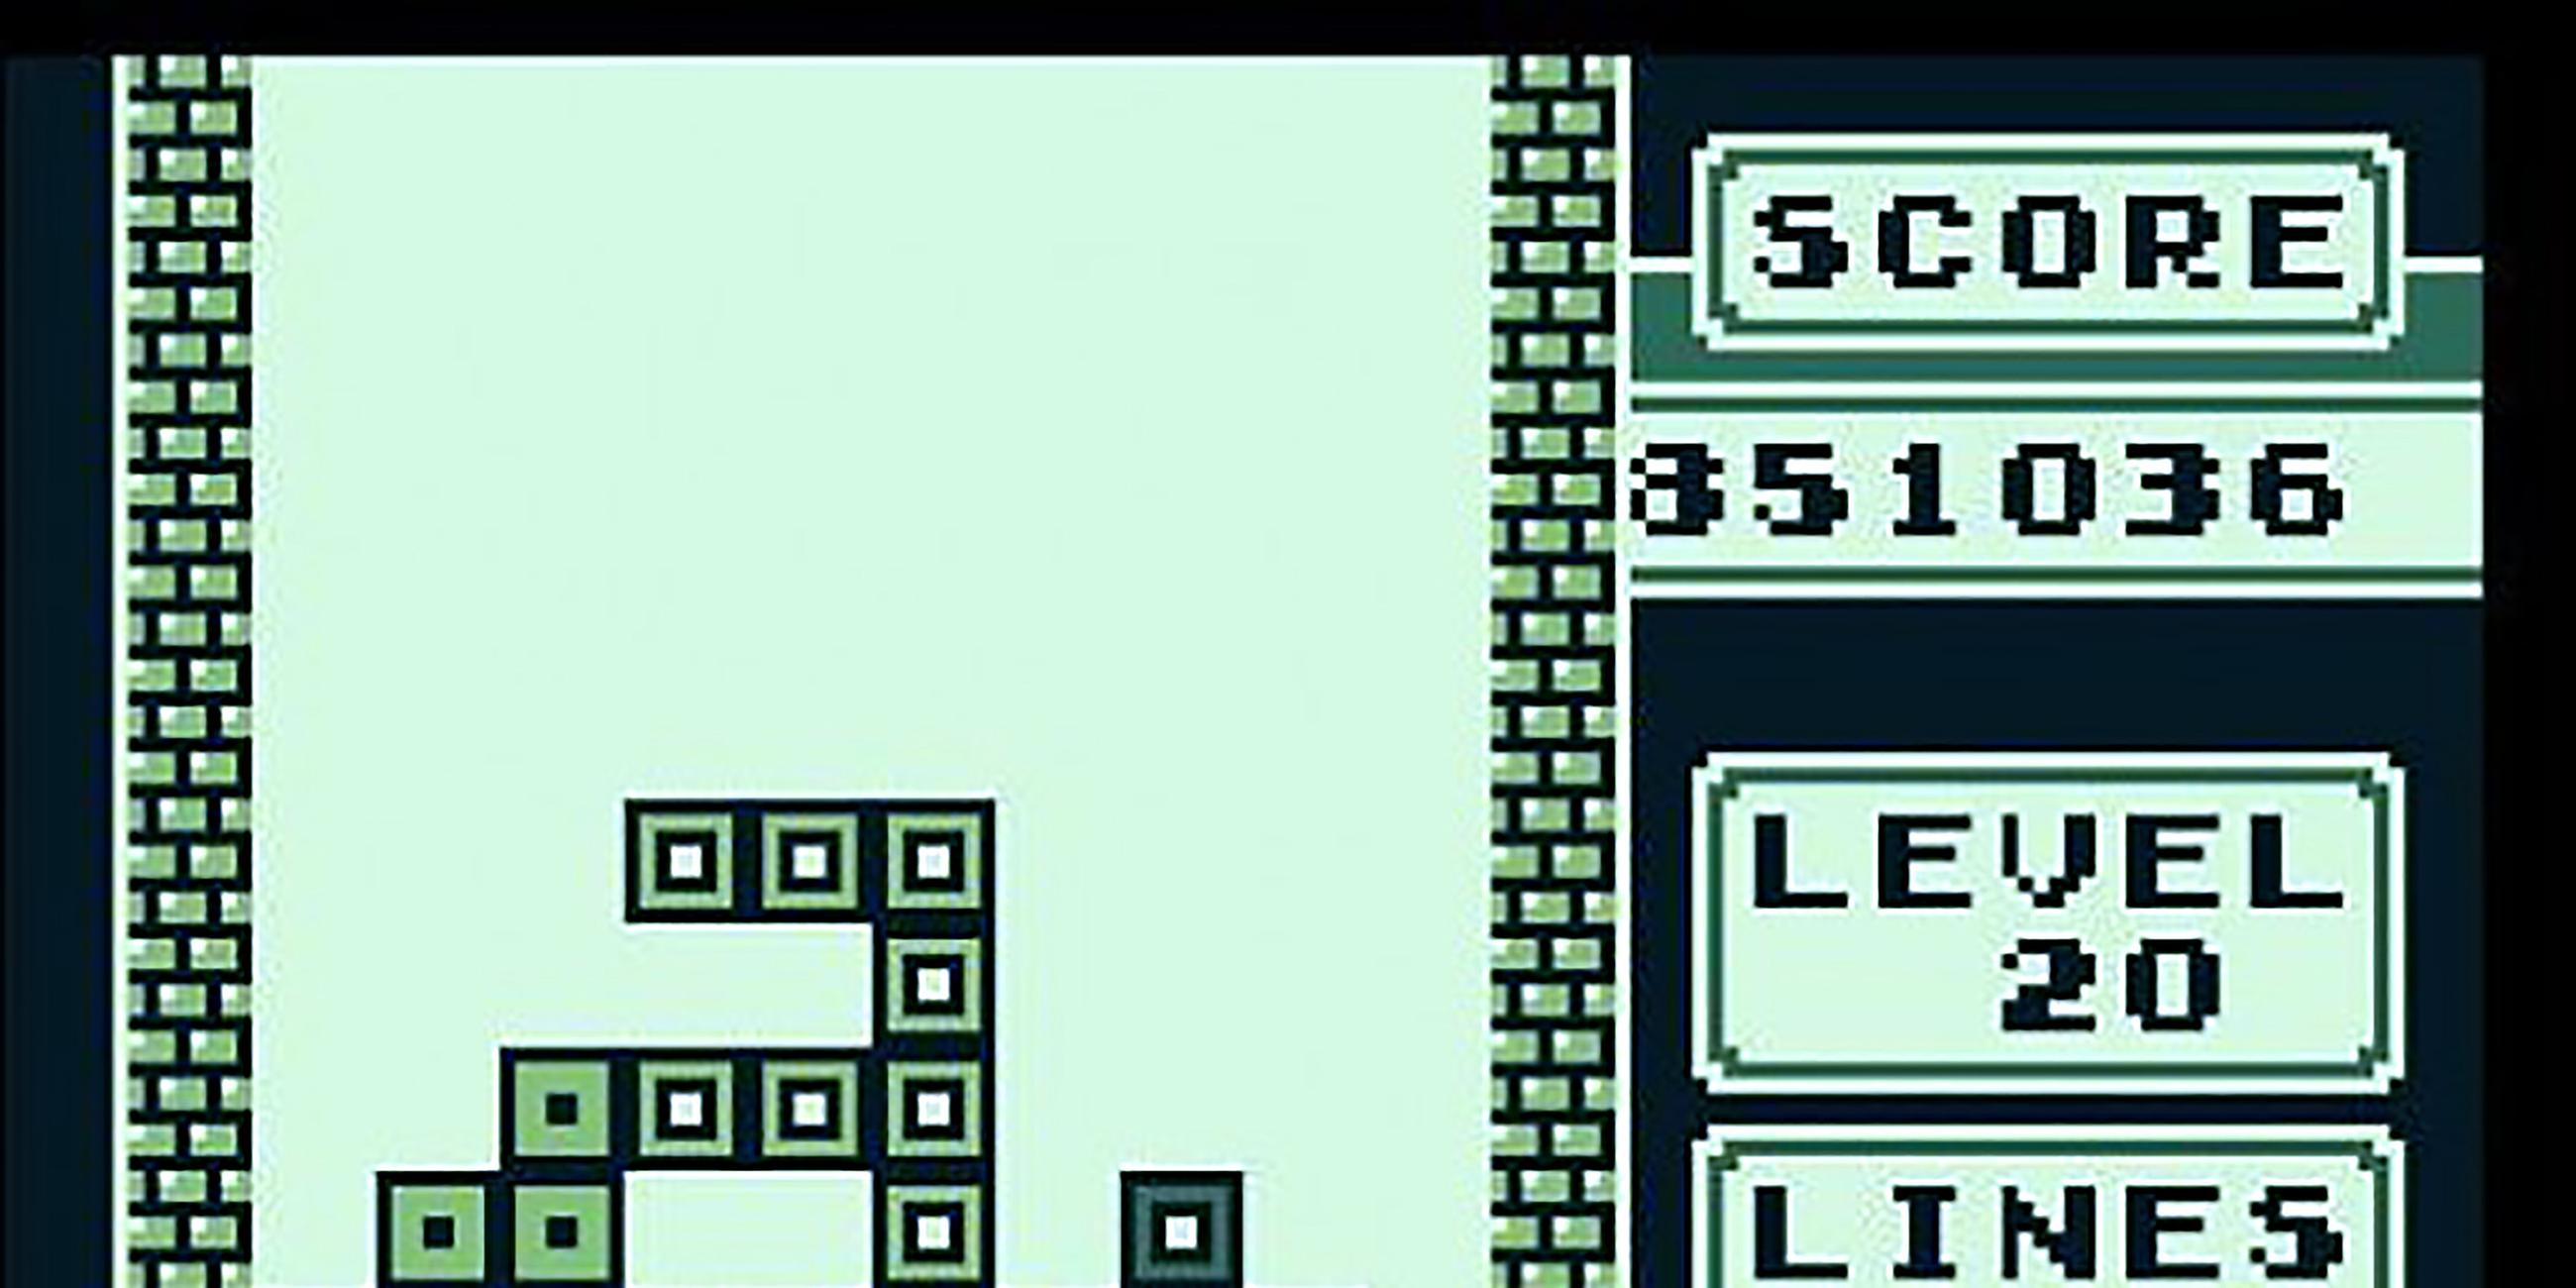 Der Klassiker Tetris, erfunden vom russischen Mathematiker Alexej Paschitnow, machte den Game Boy populär. Die Cartridge verkaufte sich 30 Millionen mal. 